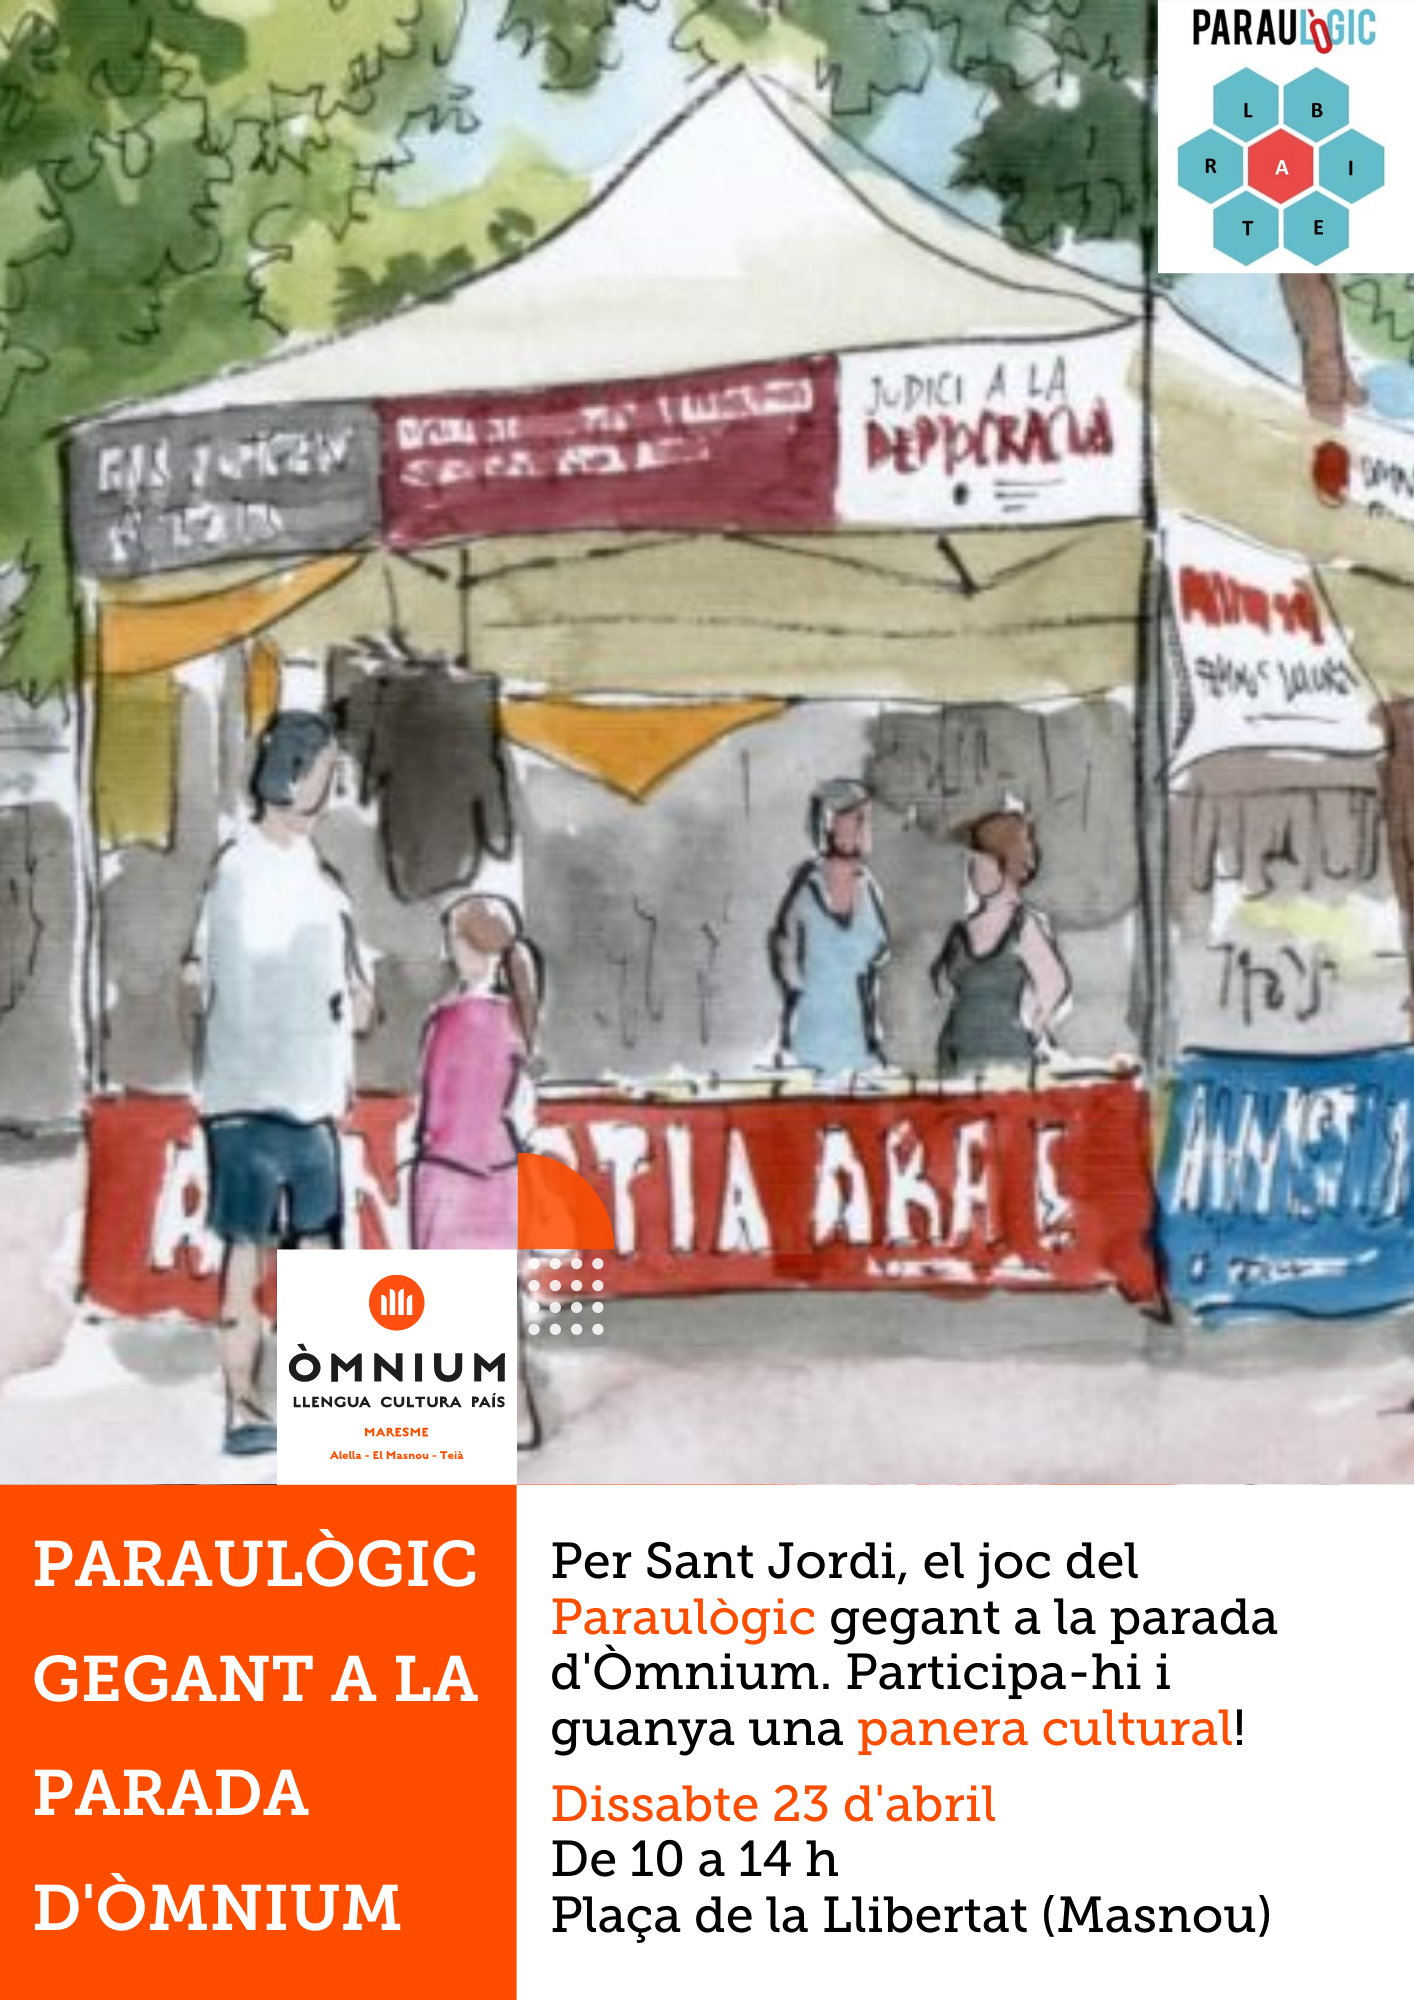 Per Sant Jordi, el joc gegant del Paraulògic a la parada d'Òmnium